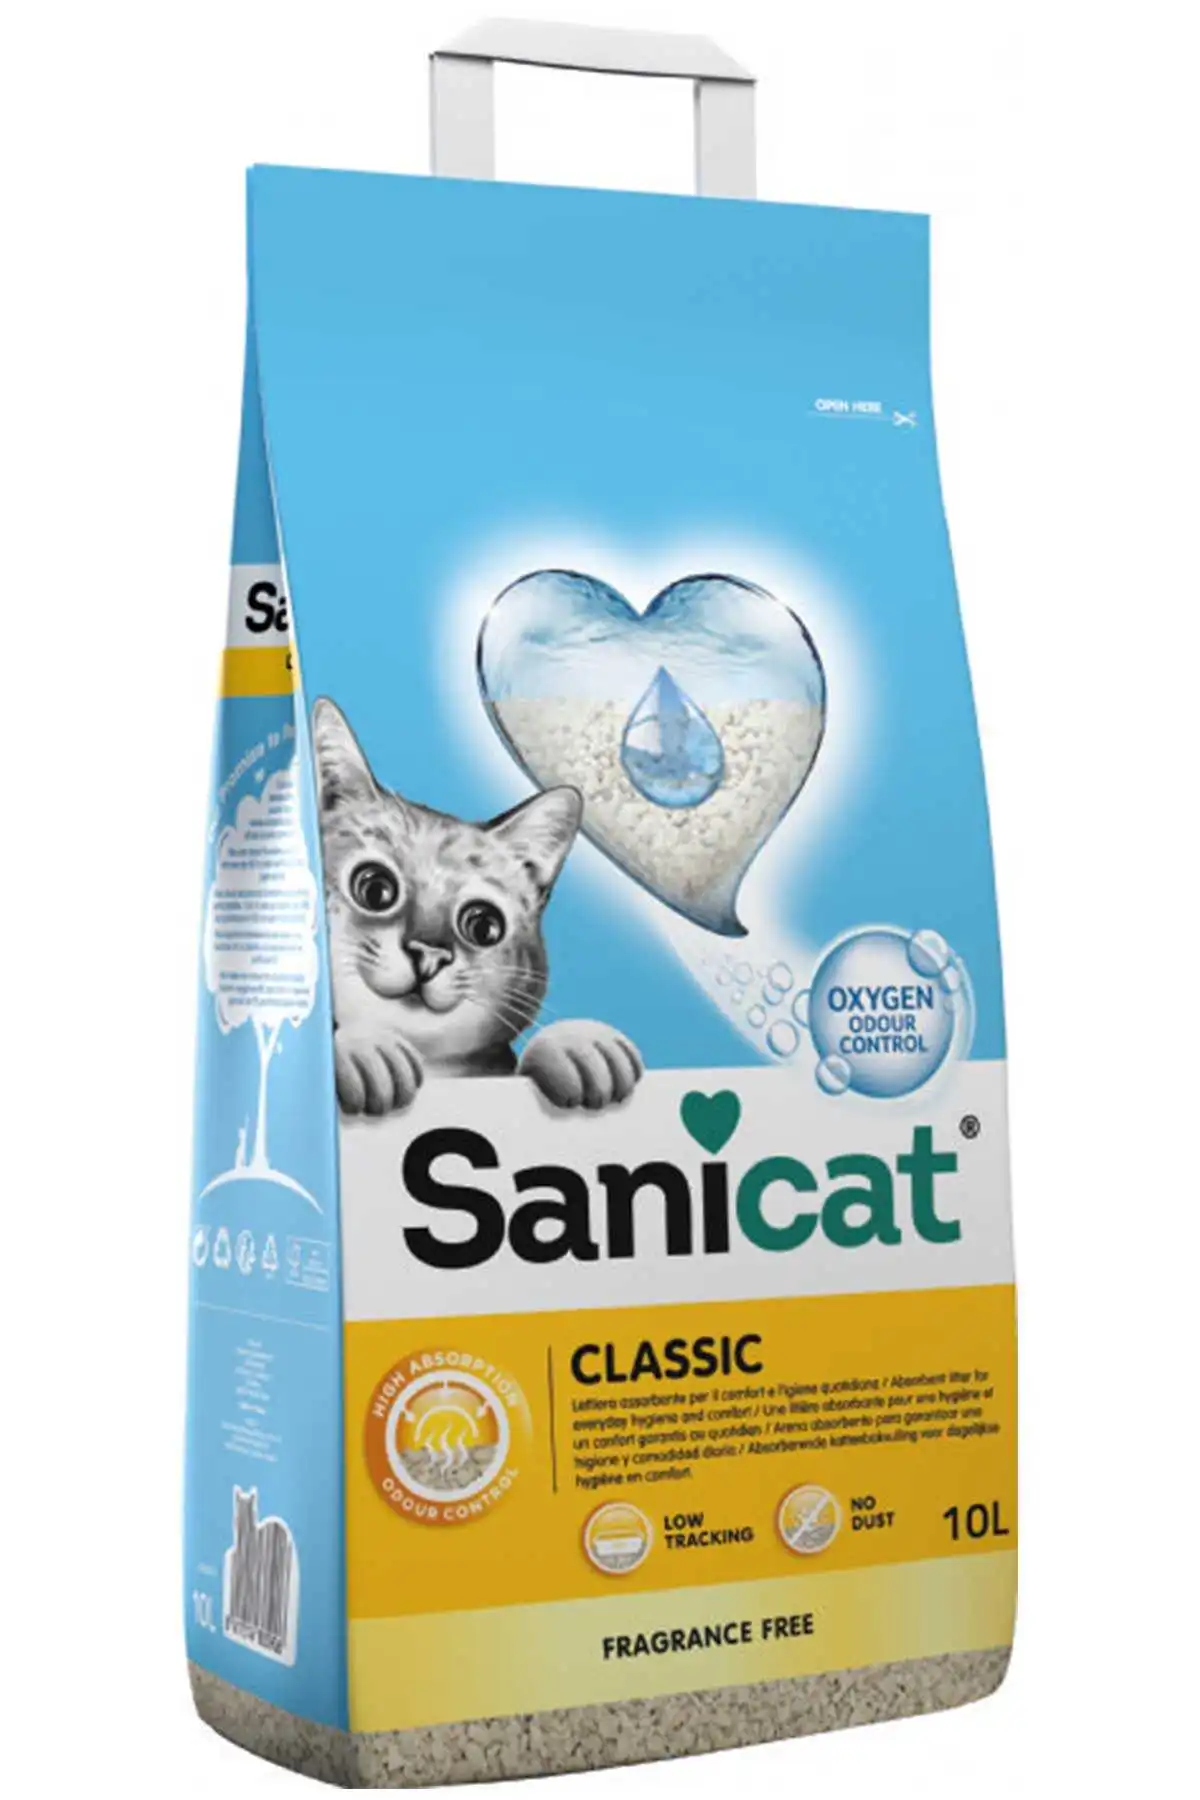 SANICAT - Sanicat Classic Oksijen Kontrollü Hızlı Topaklanan Kedi Kumu 10lt